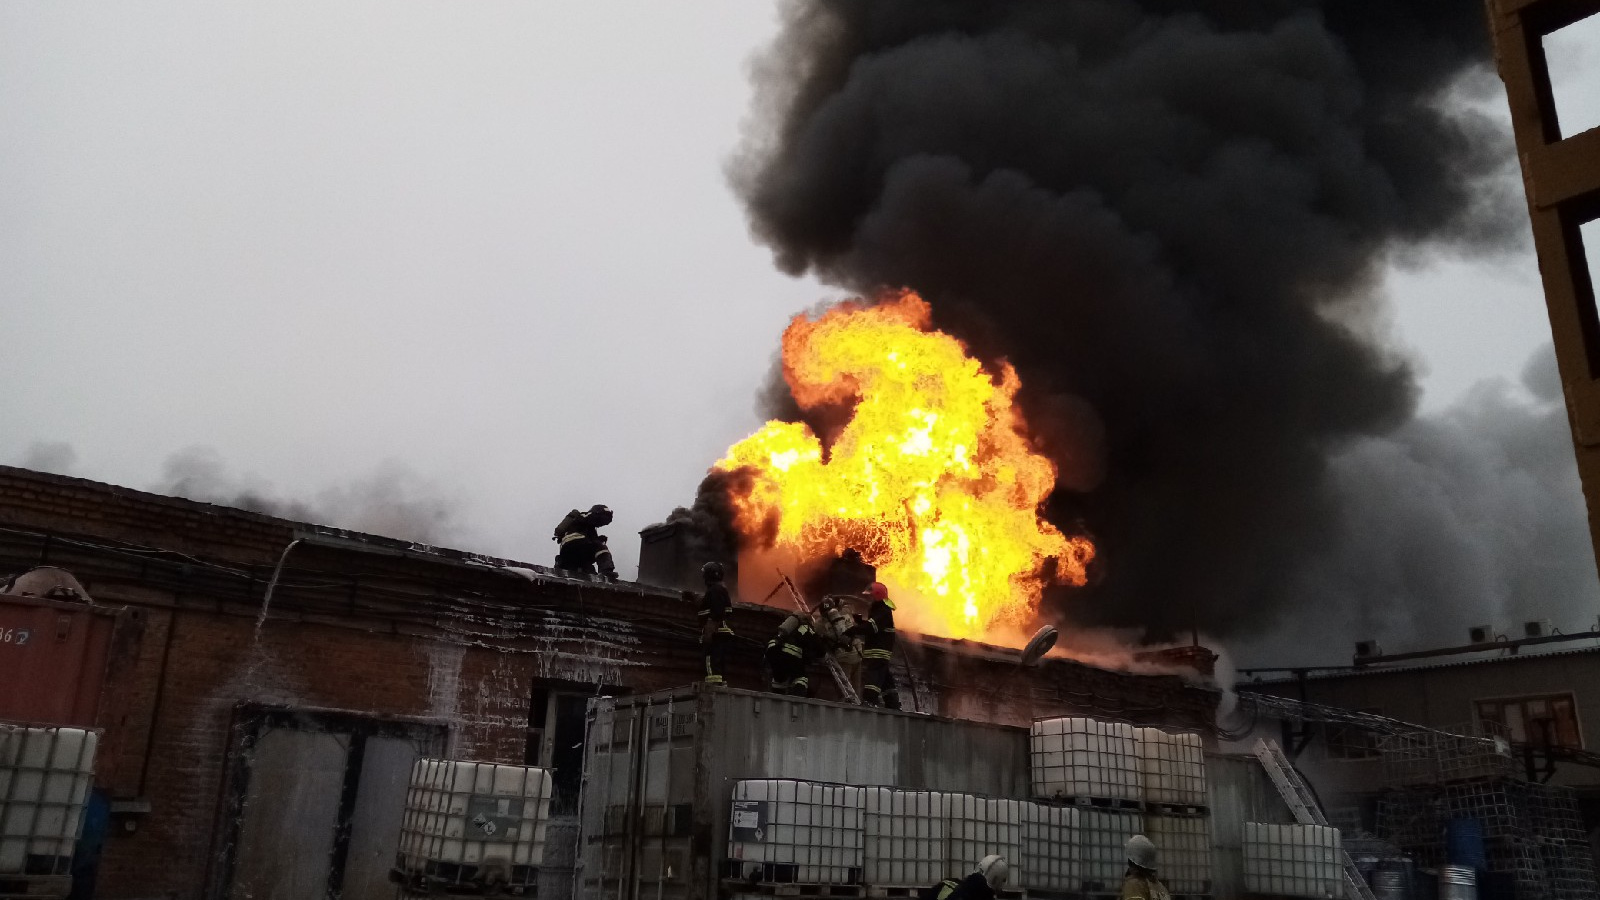 Пожар в Академии полиции в Риге. Сгоревшее производство в Лобне картон видео. Ущерб от пожара третьим лицам